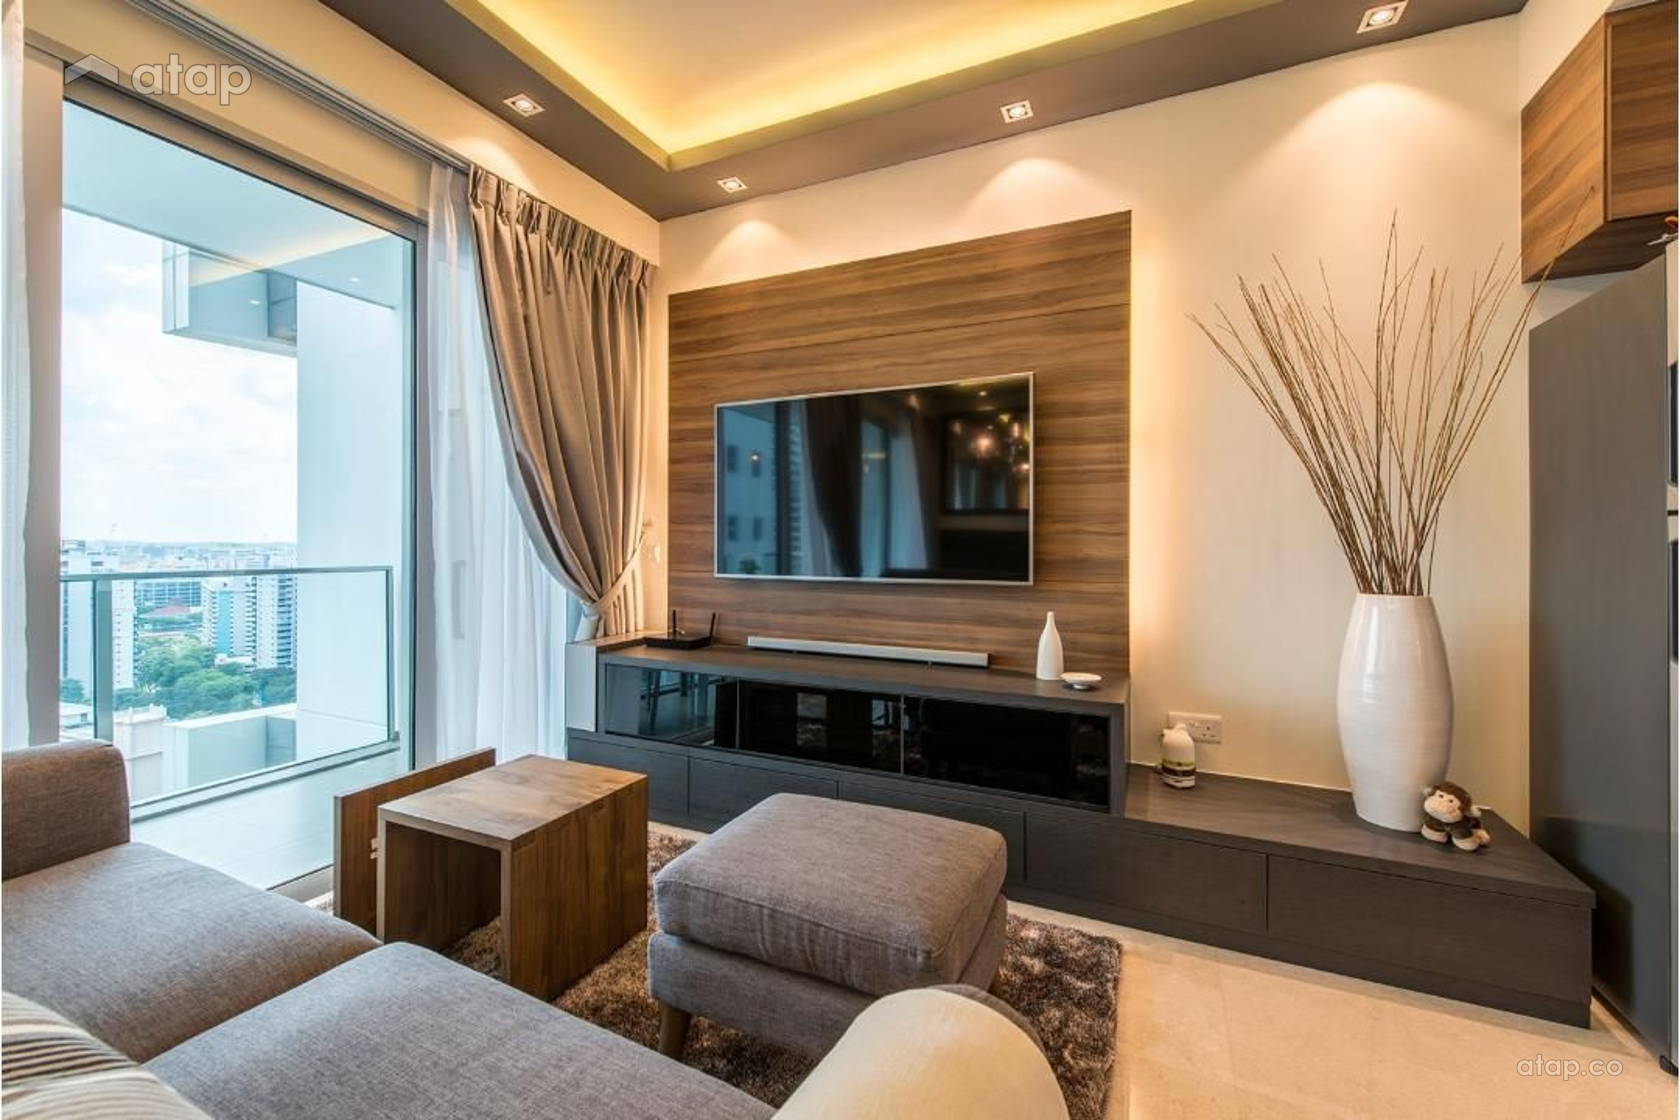 tapete malaysia design,wohnzimmer,zimmer,innenarchitektur,eigentum,möbel